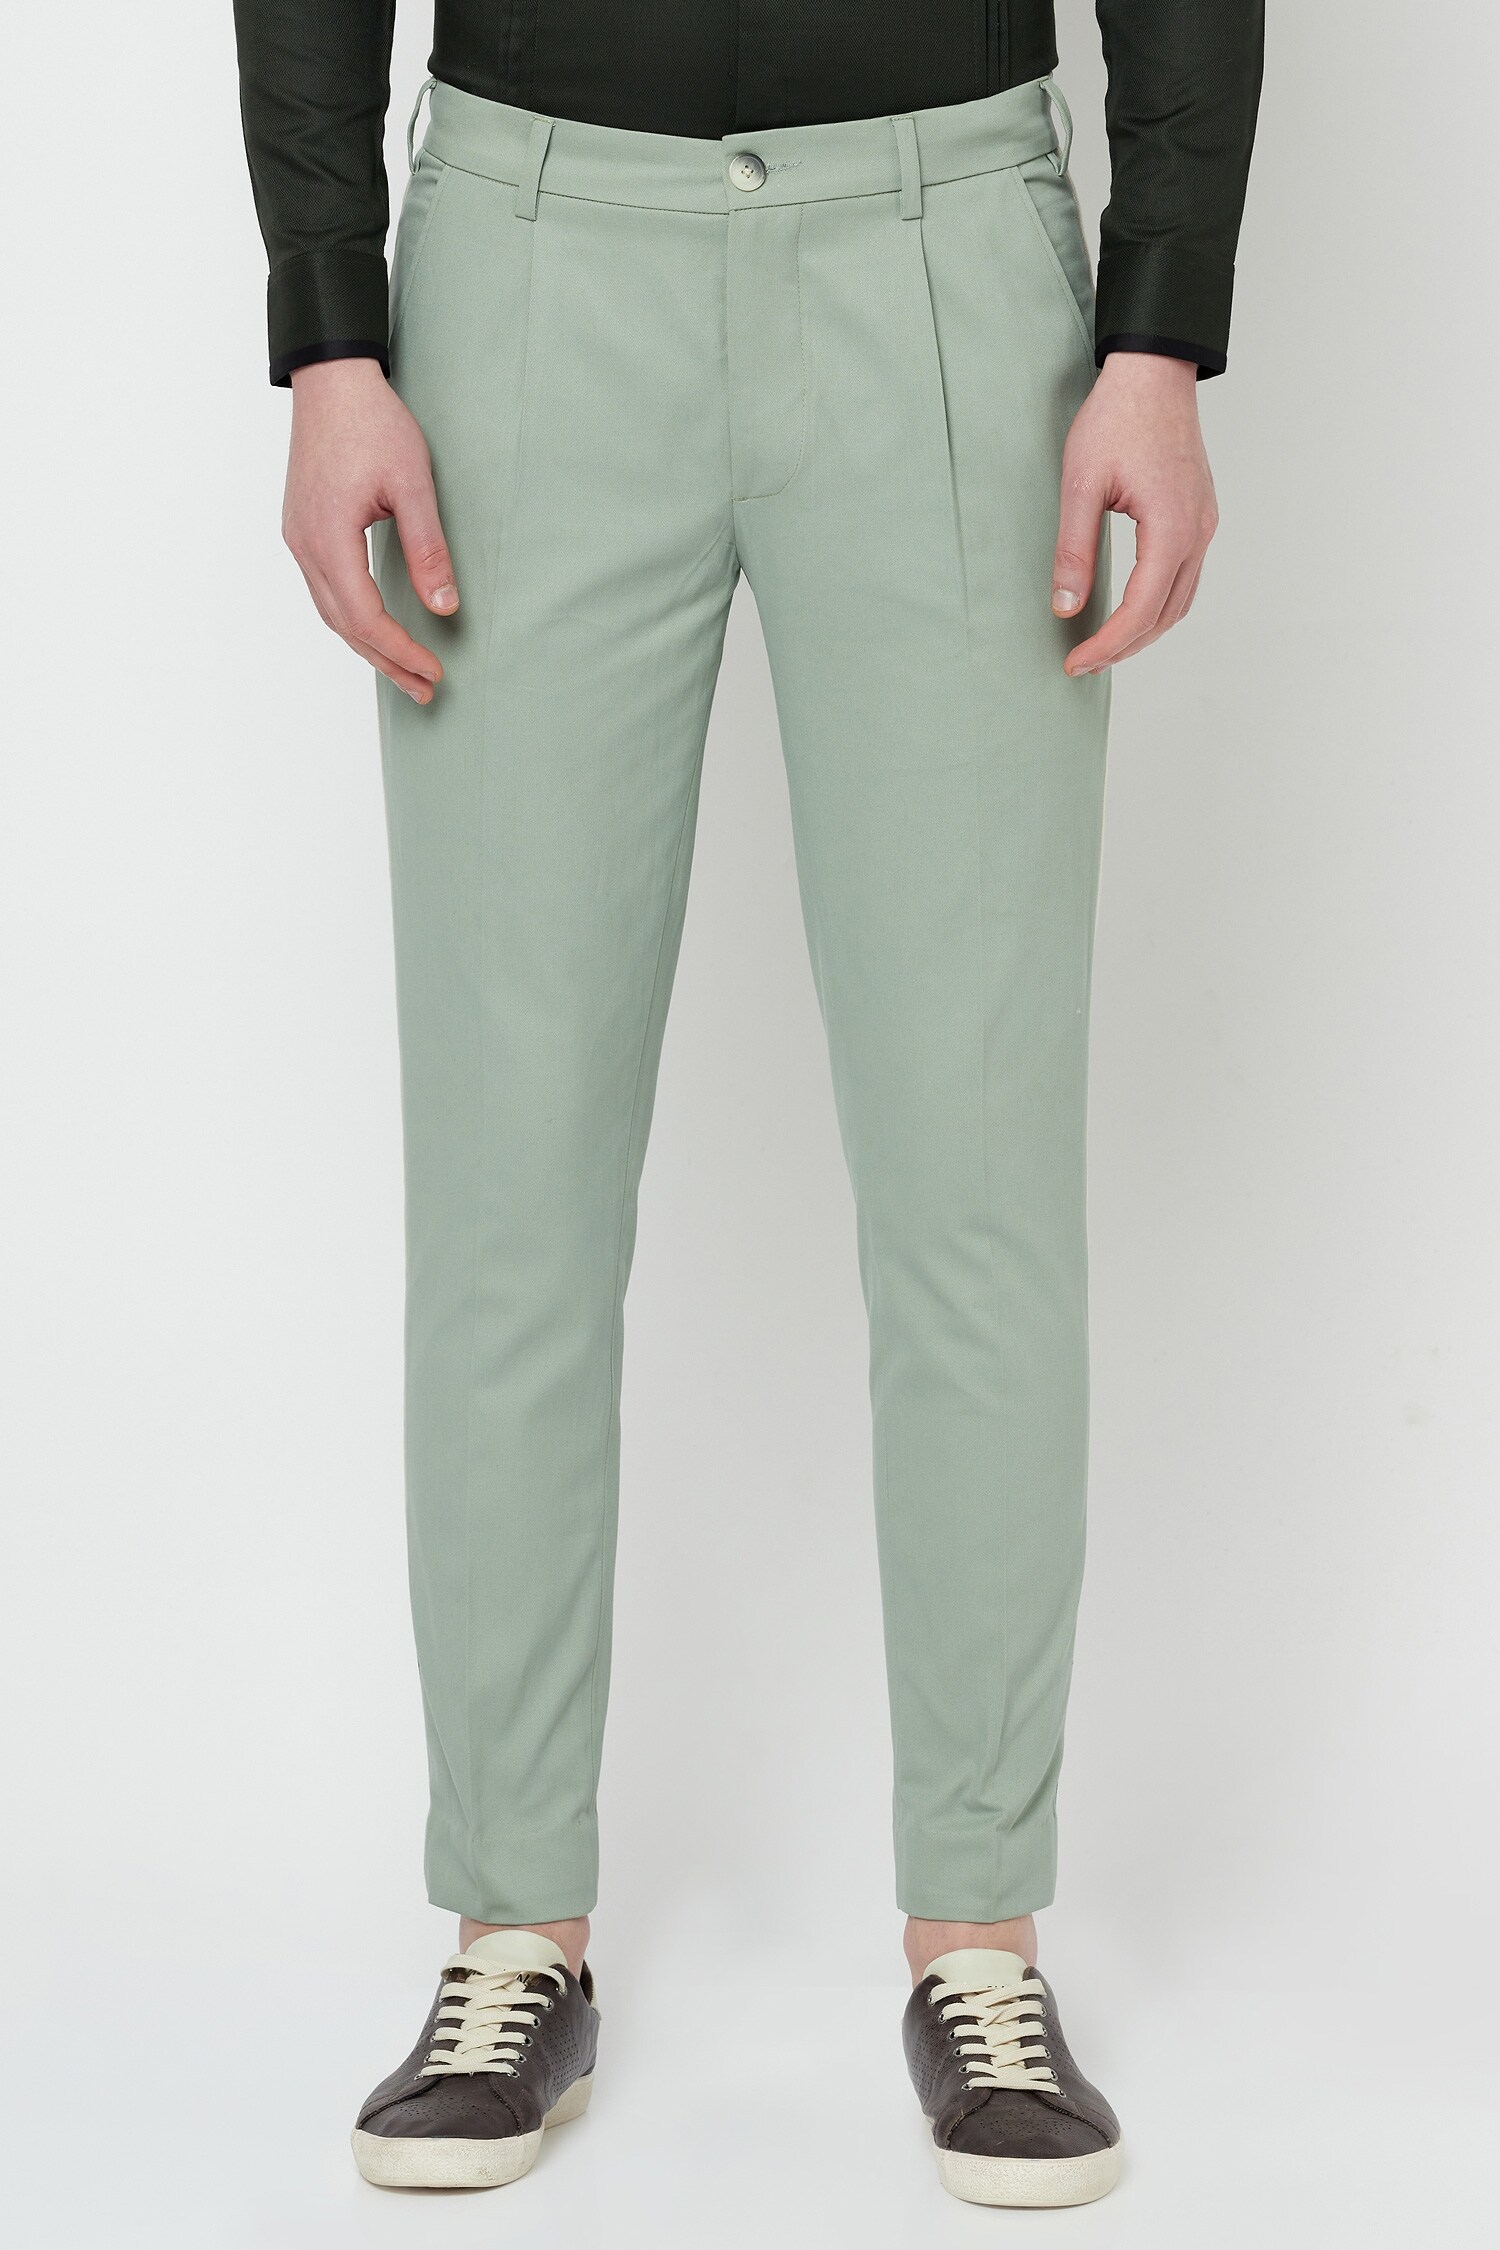 Levis Green Trousers - Buy Levis Green Trousers online in India